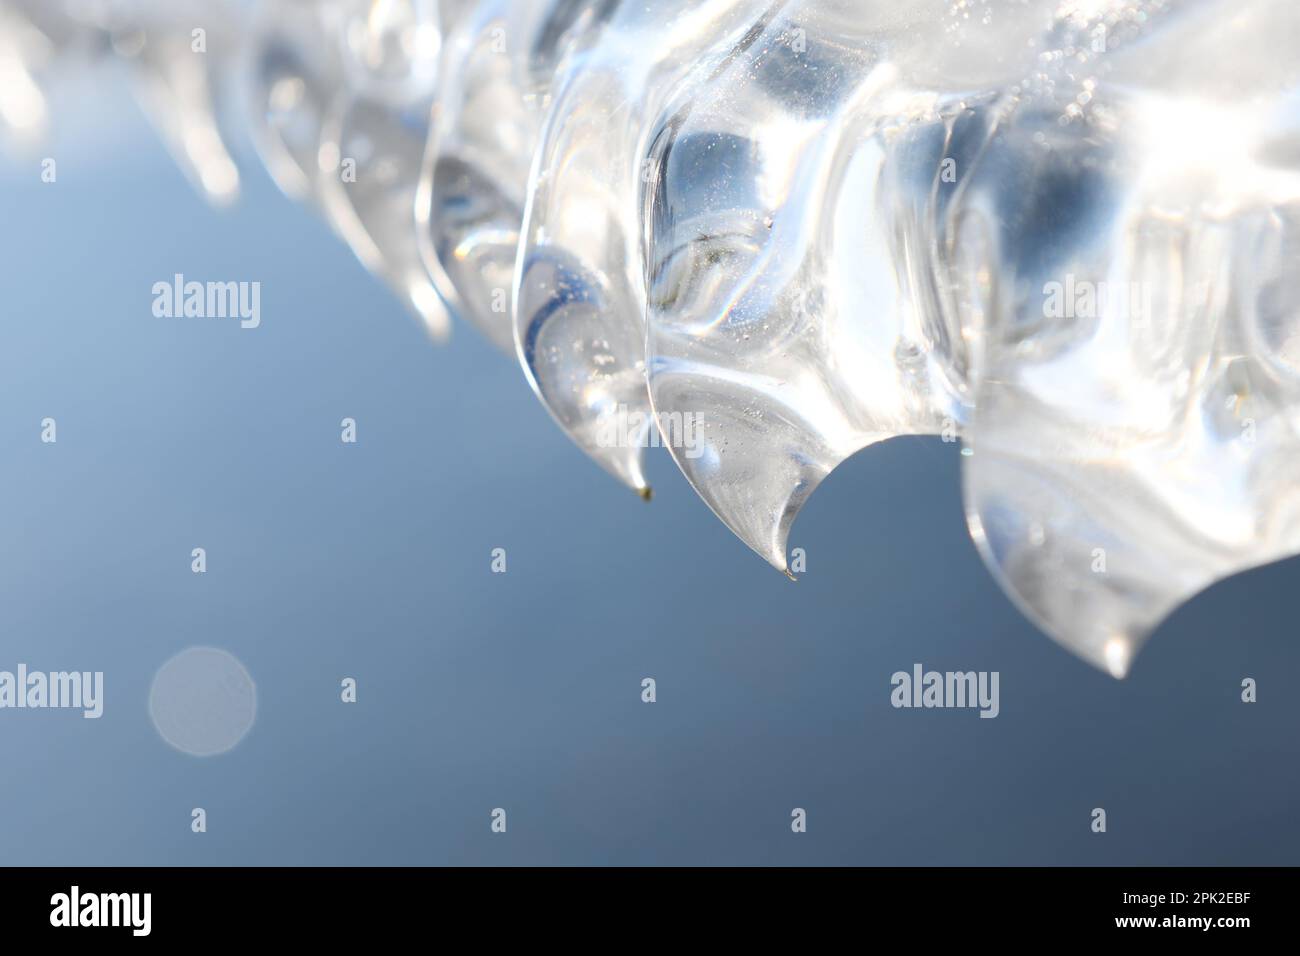 façonné par le vent et la météo... Dents de glace, griffes de glace ( inondation d'hiver 2020/2021 ), sculptures de glace naturelles, détails d'une plaque de glace suspendue Banque D'Images